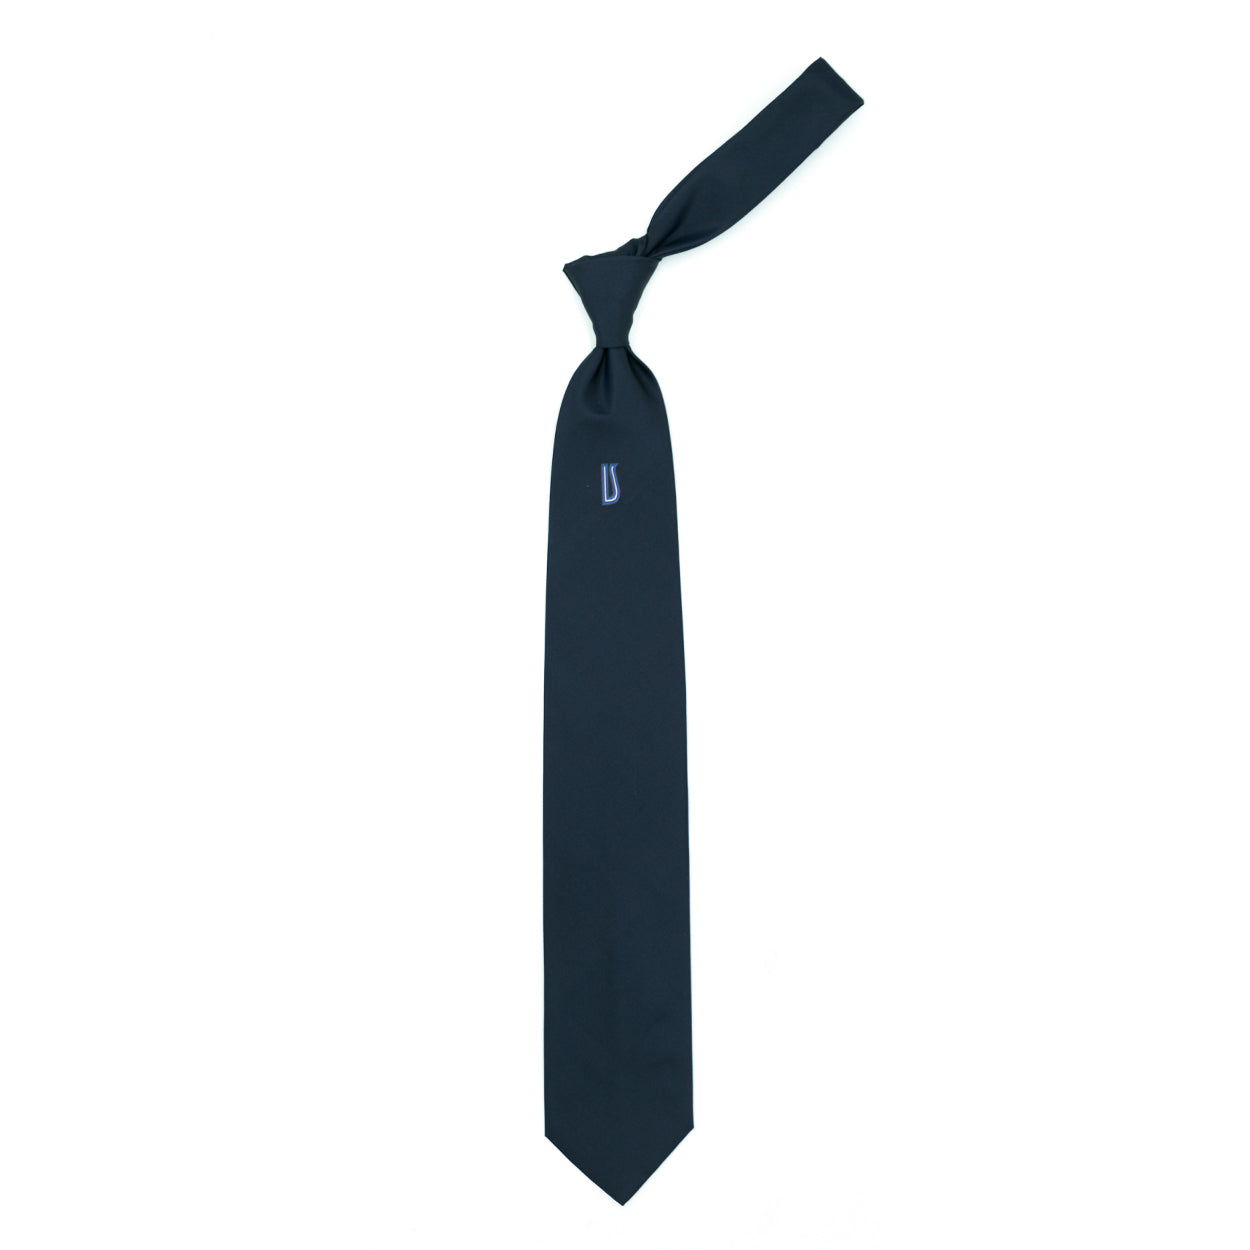 Cravatta blu con logo Ulturale in blu e bianco al sottonodo